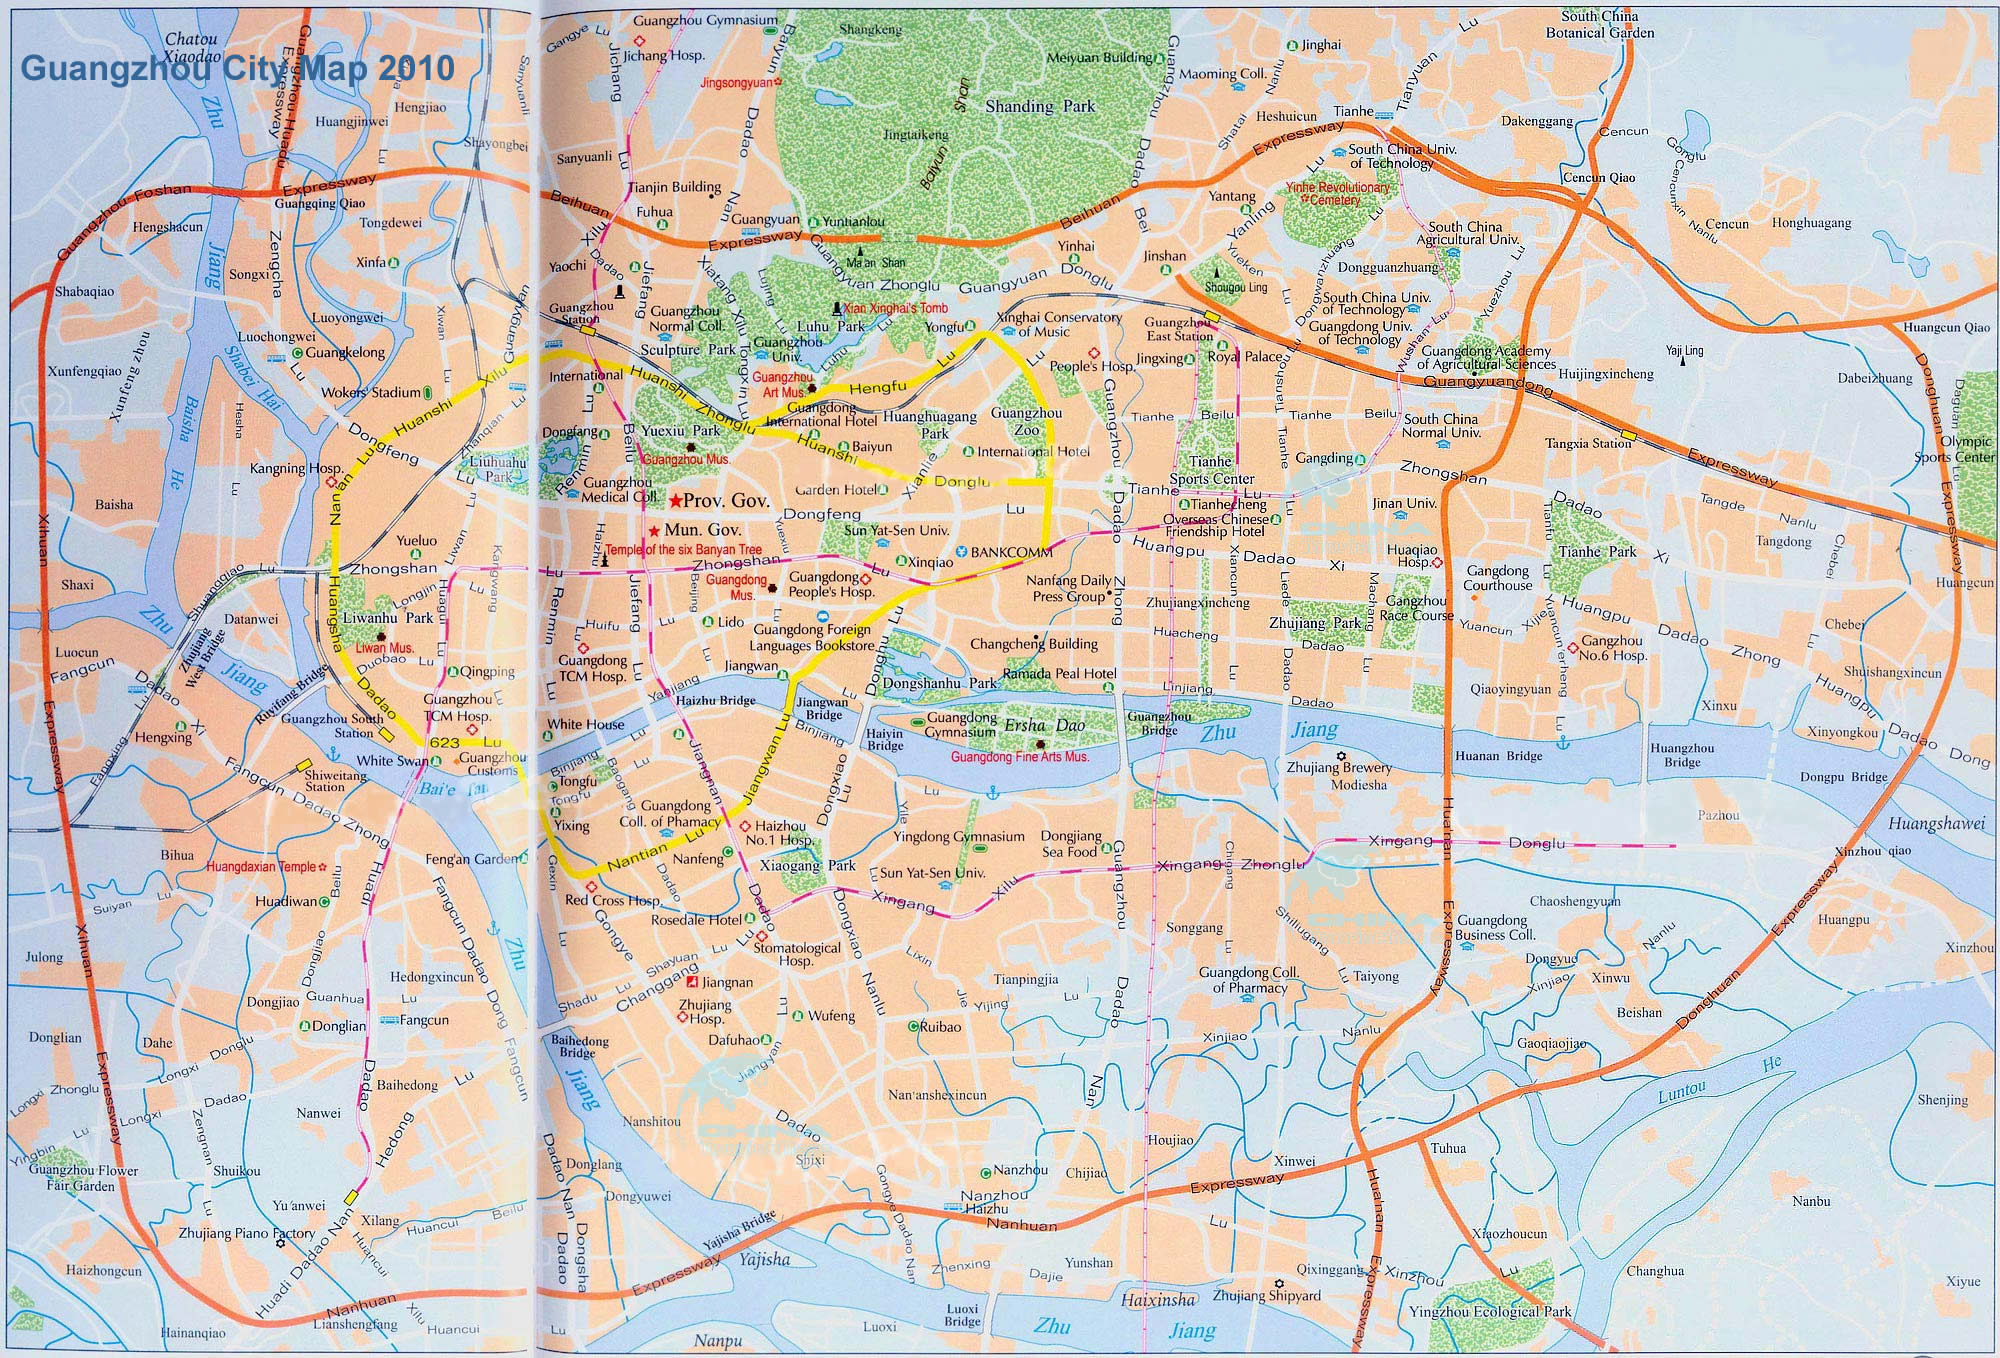 Detailed Guangzhou City Map